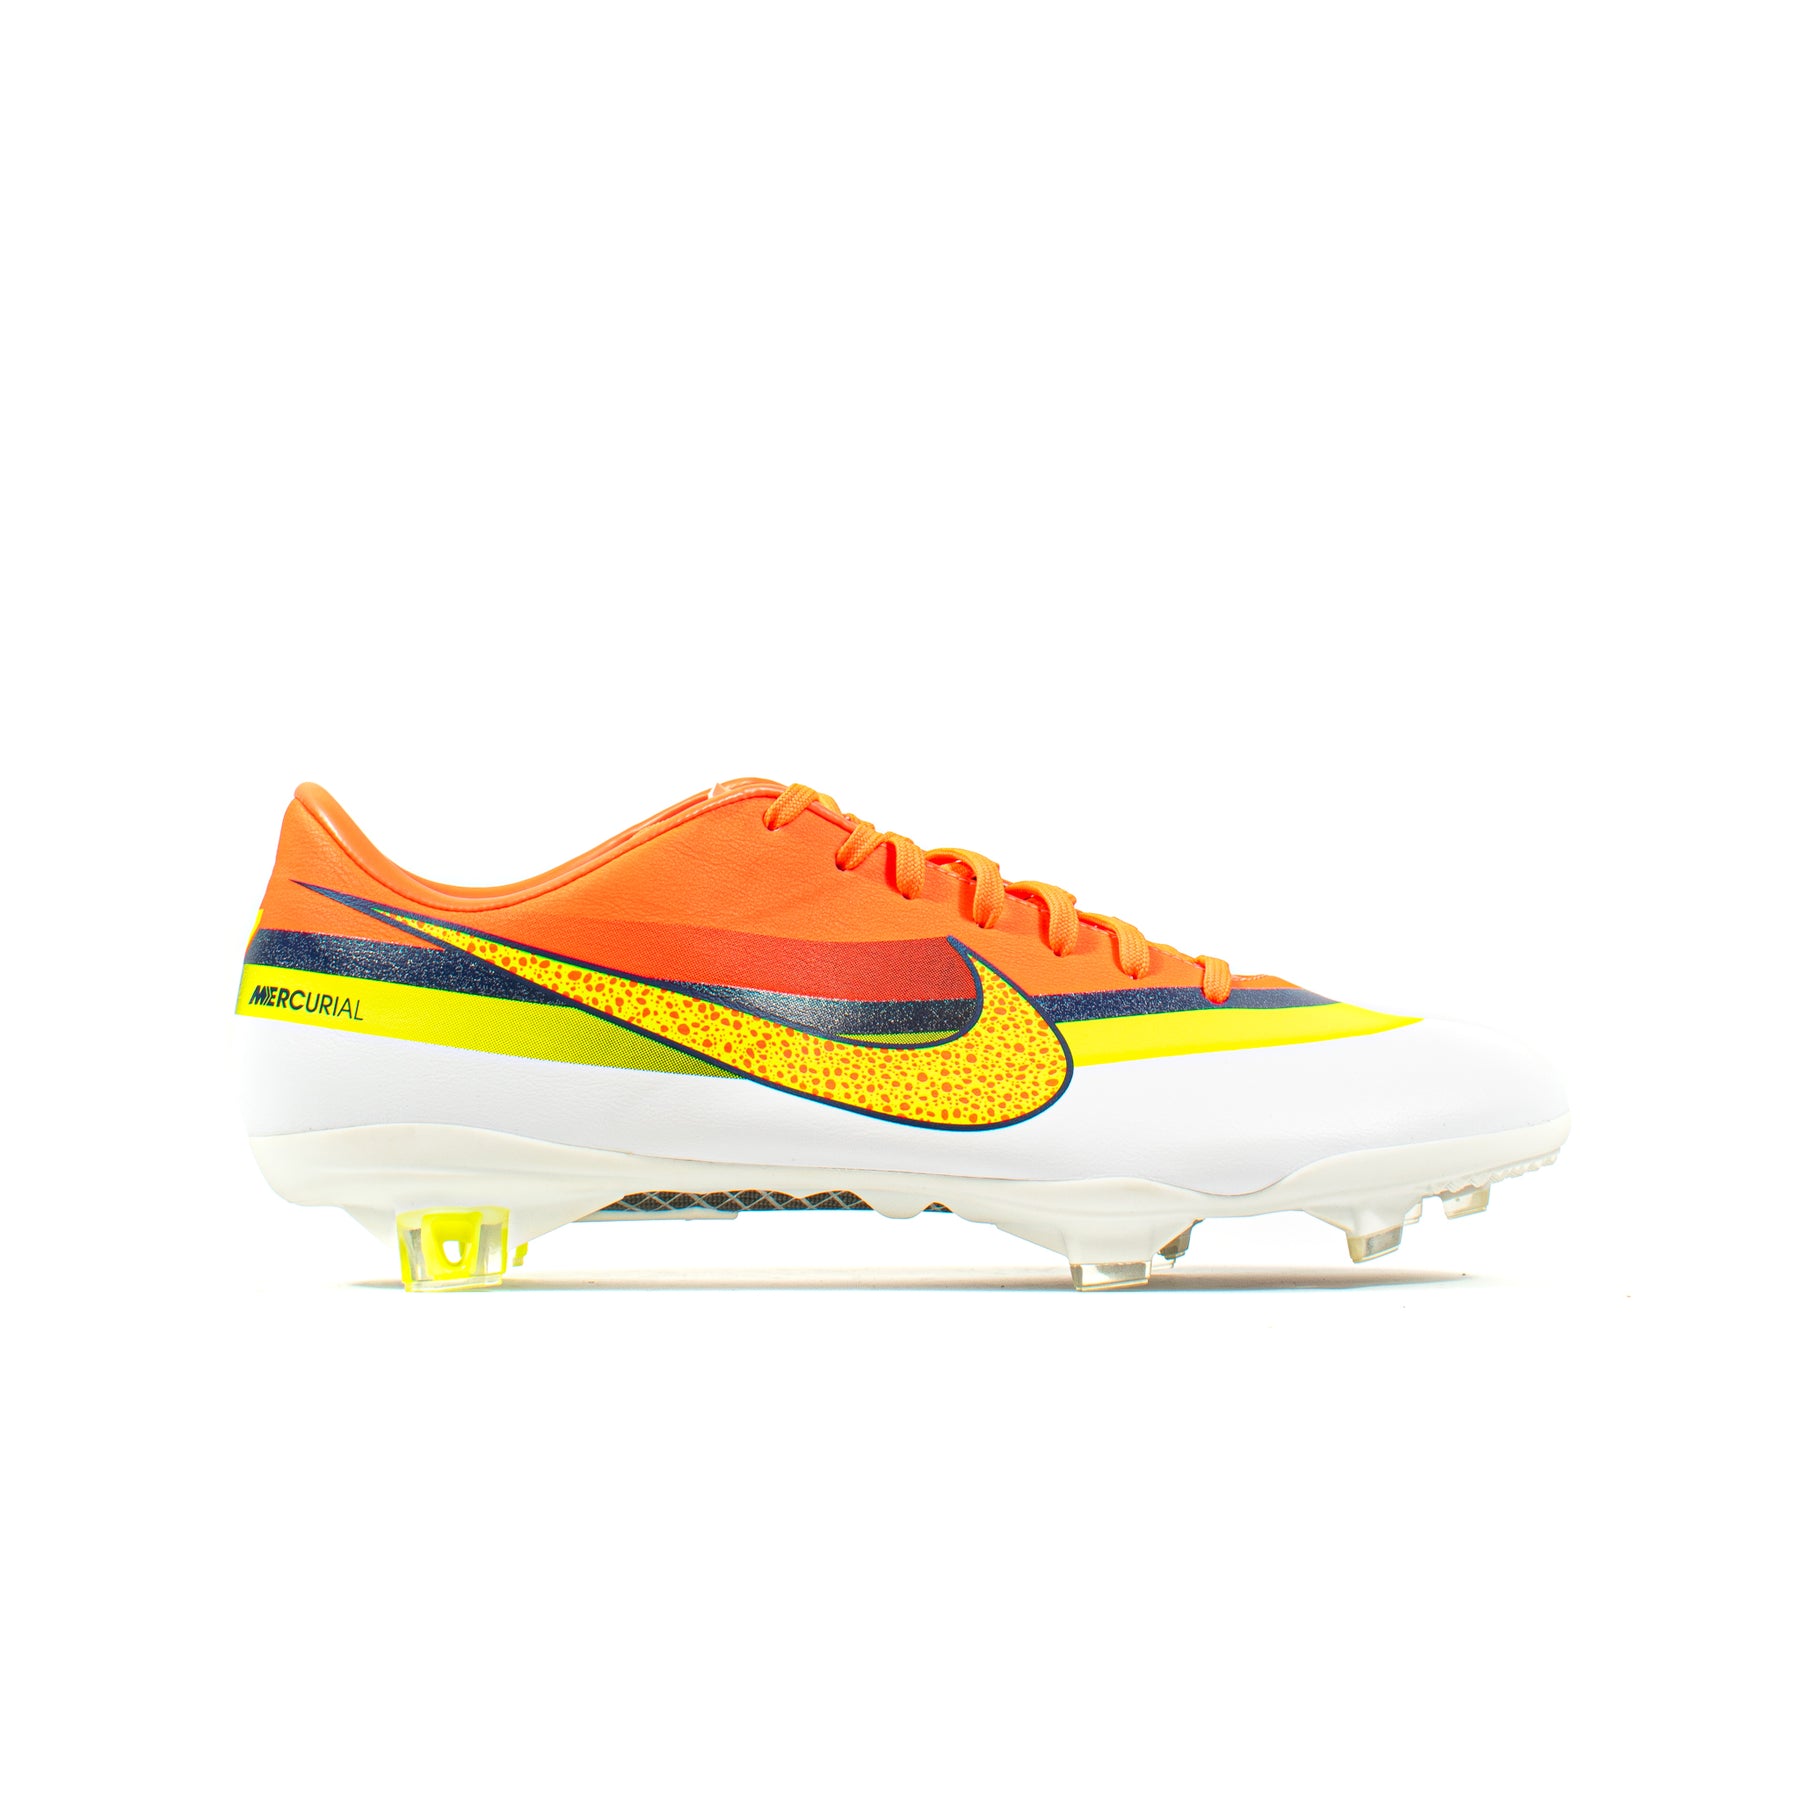 ritmo caligrafía Más allá Nike Mercurial Vapor IX CR7 White Orange FG – Classic Soccer Cleats